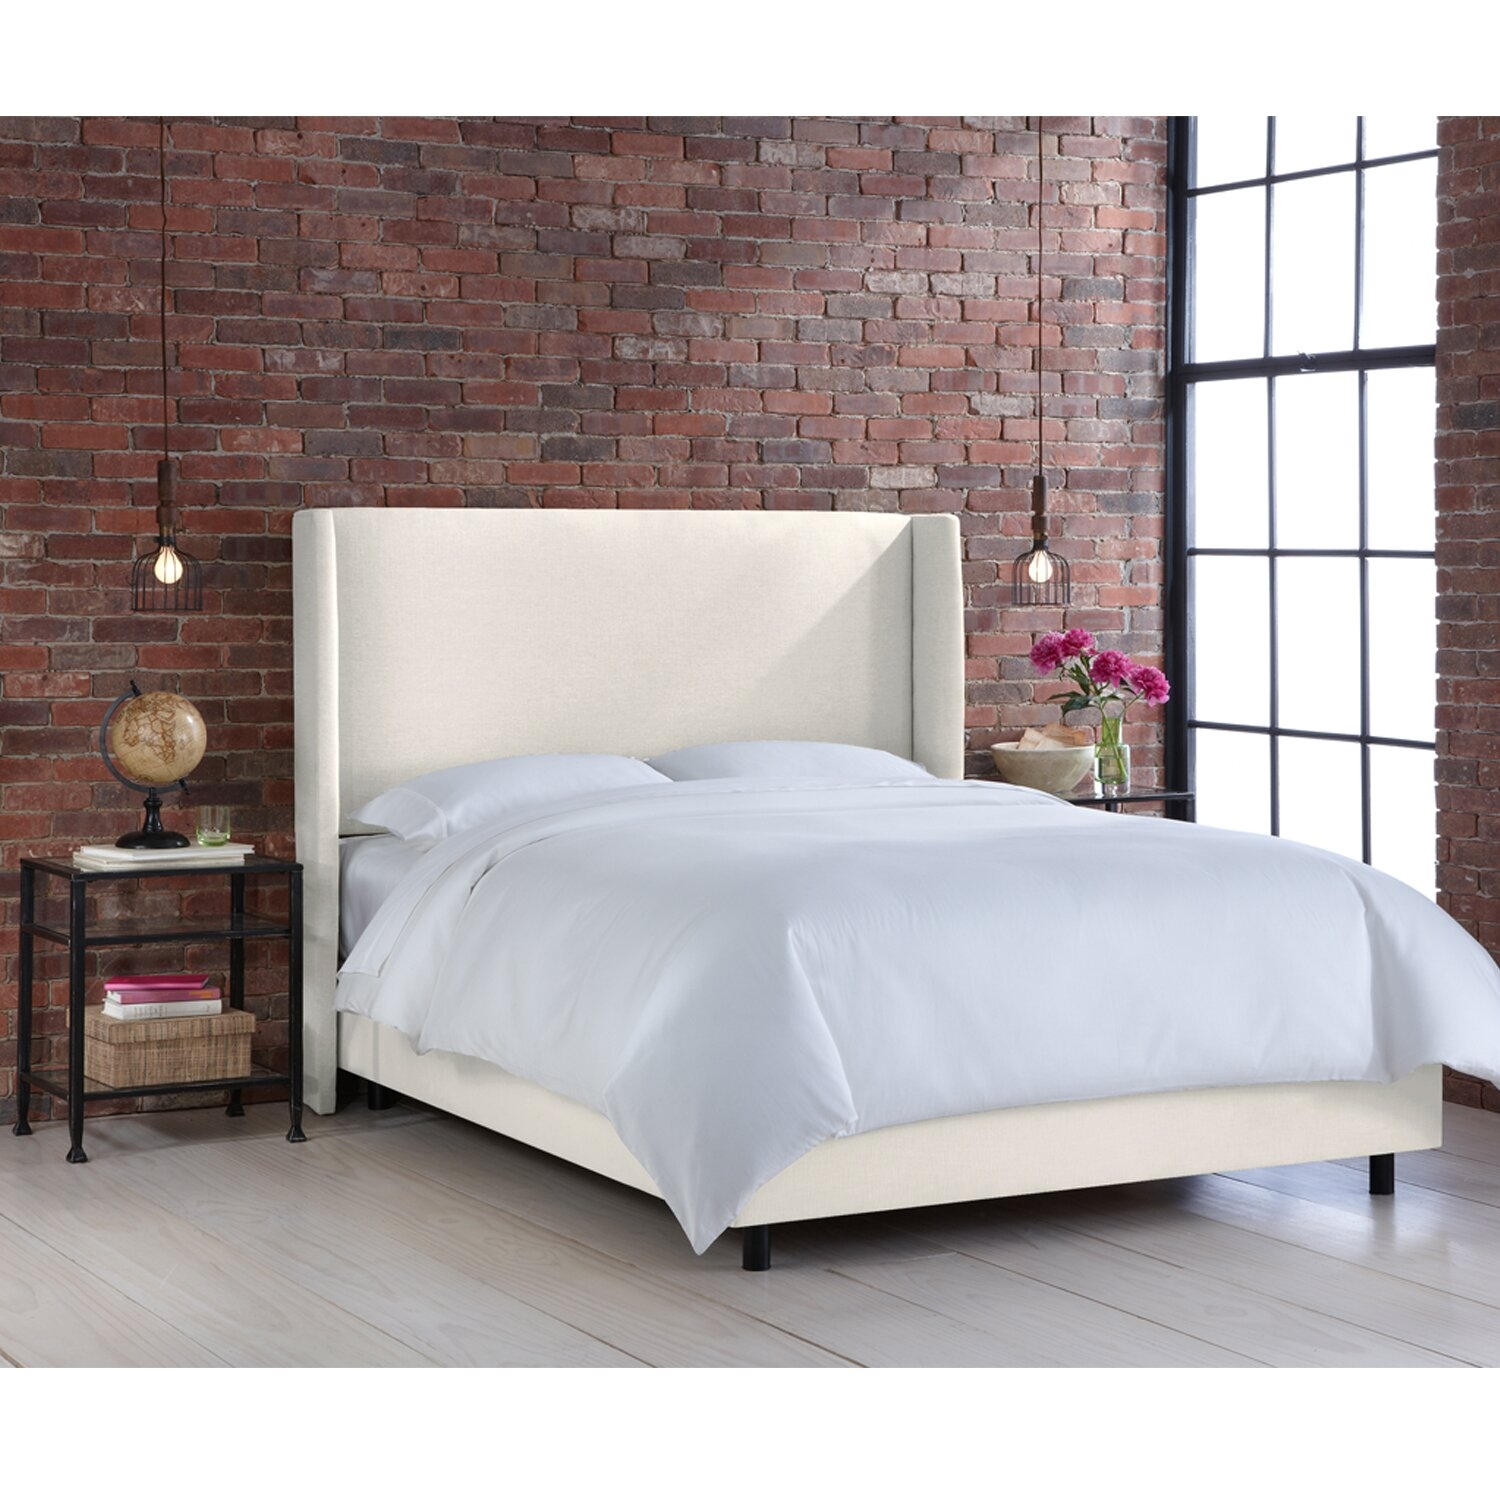 Godfrey Upholstered Standard Bed- Queen - Image 1